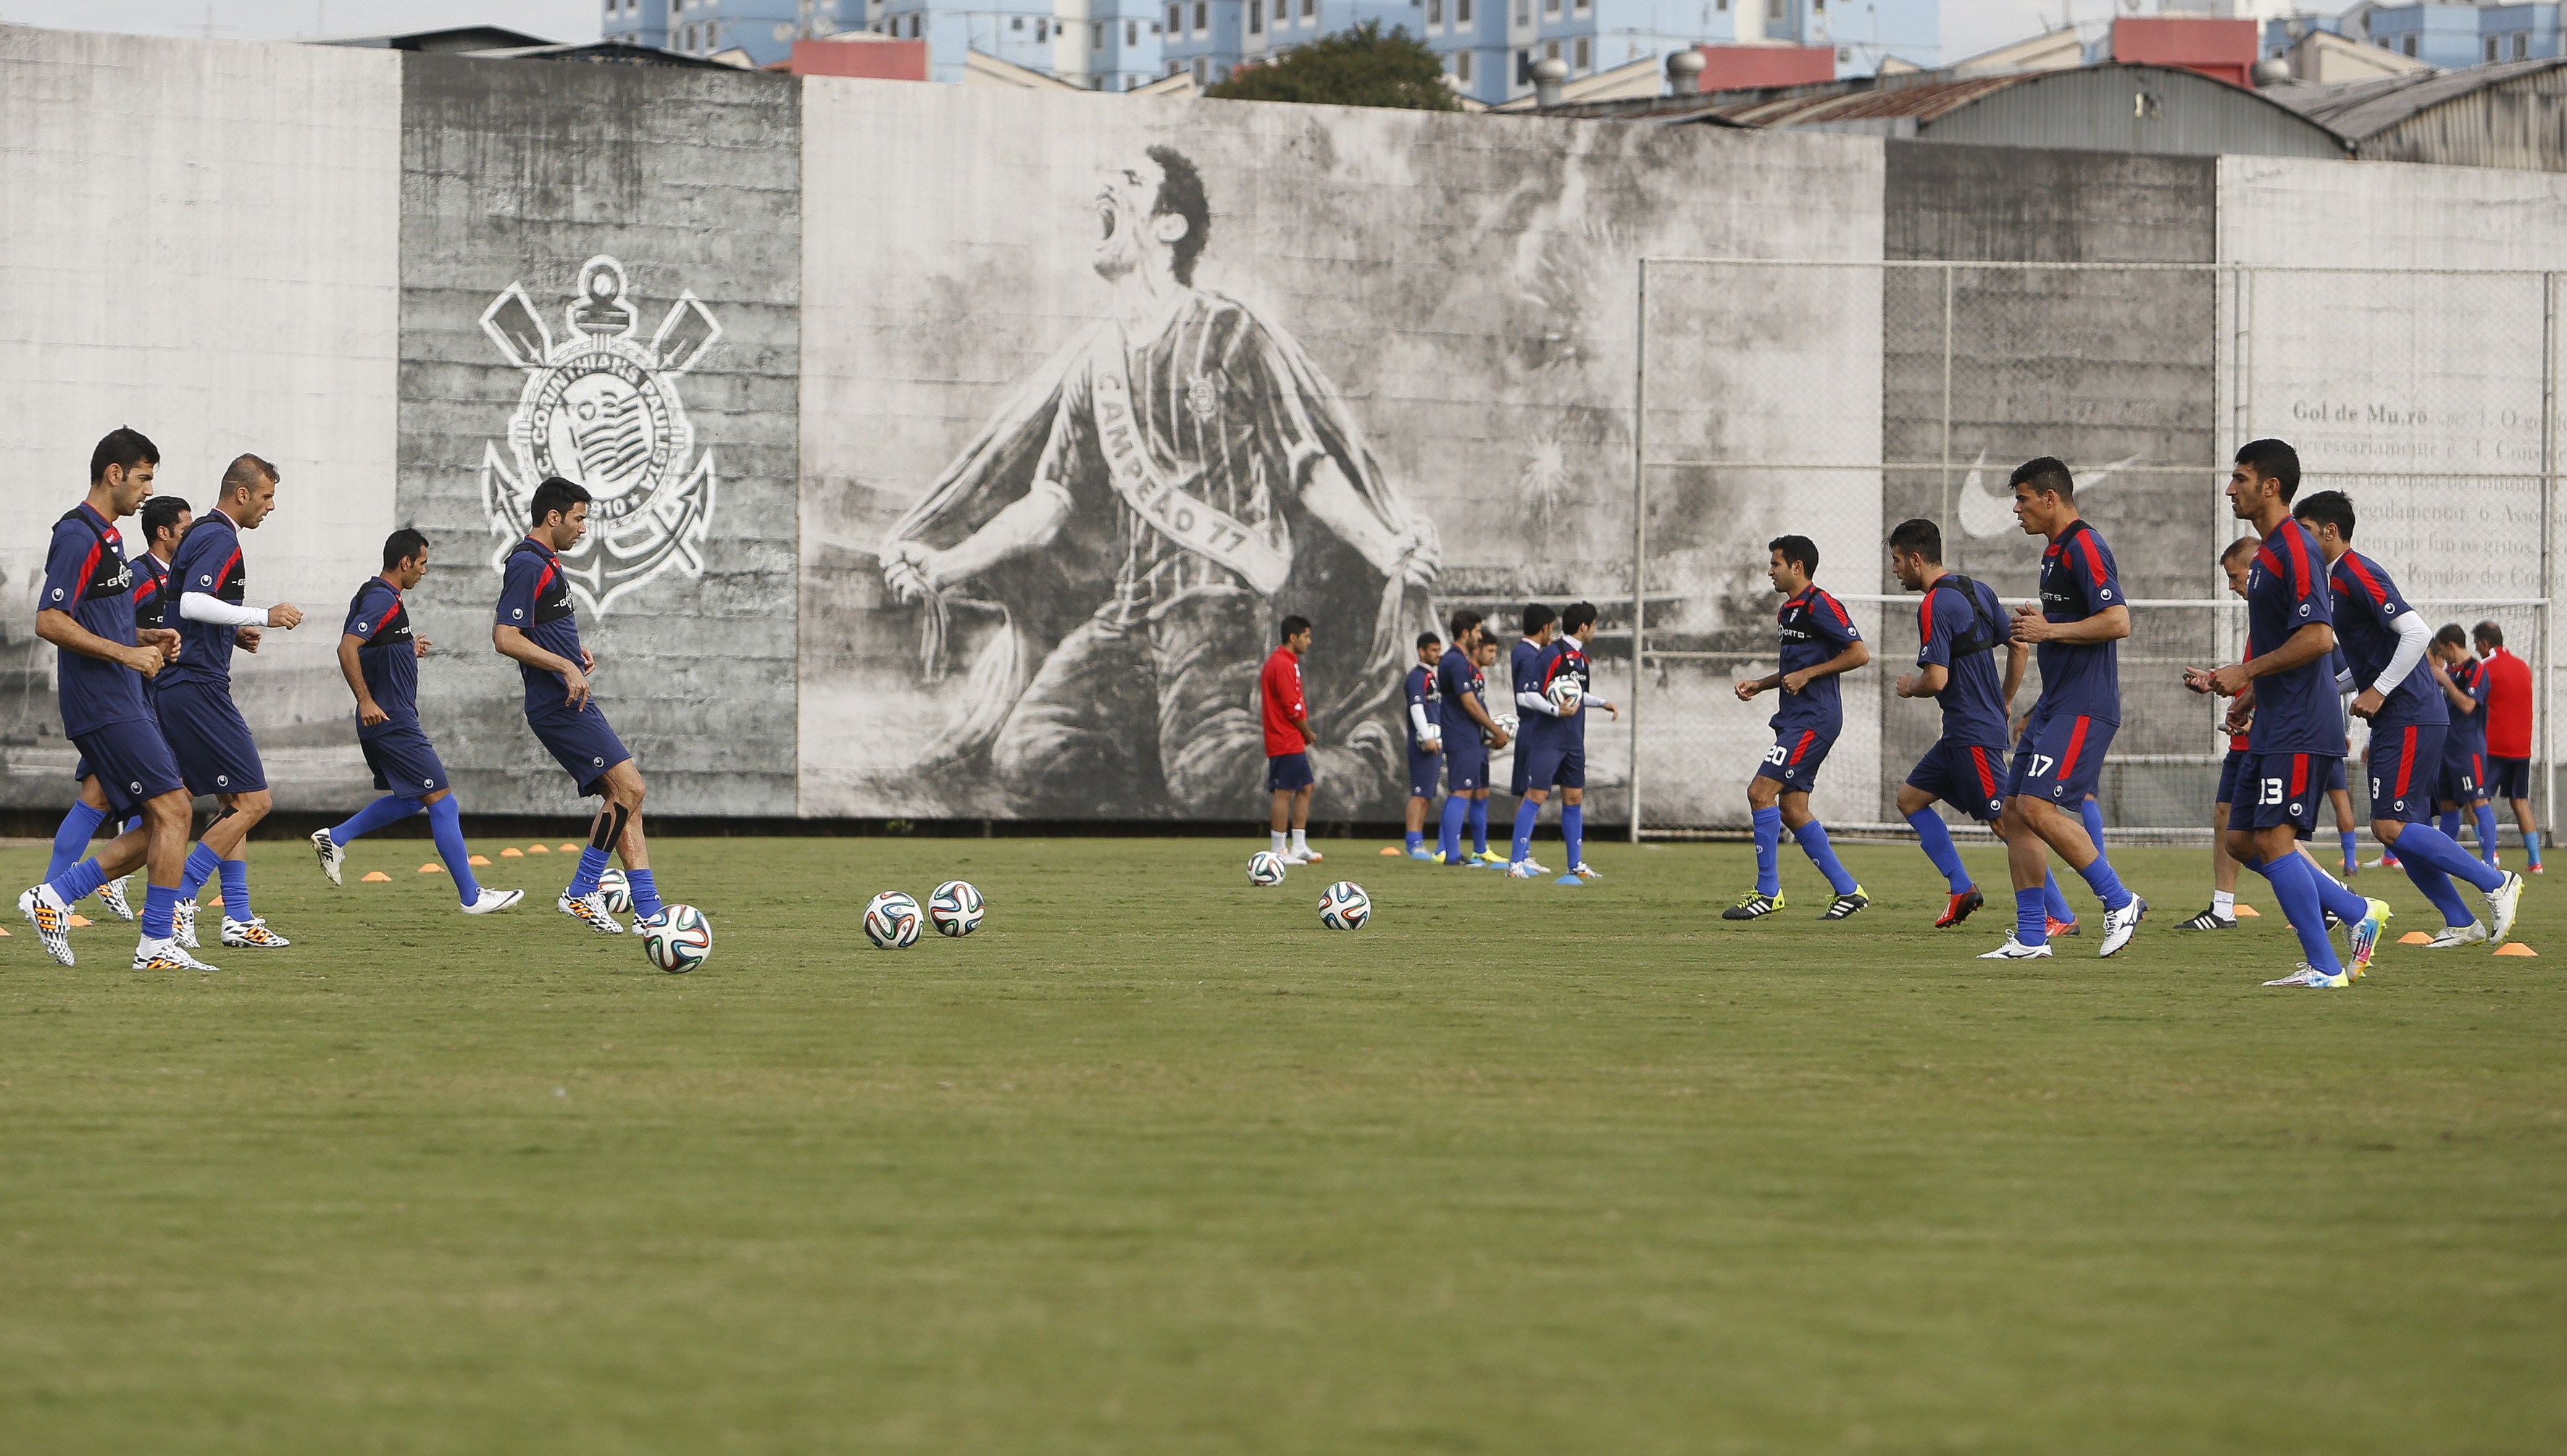 صور تدريبات المنتخبات المشاركة في كأس العالم 2014 بالبرازيل